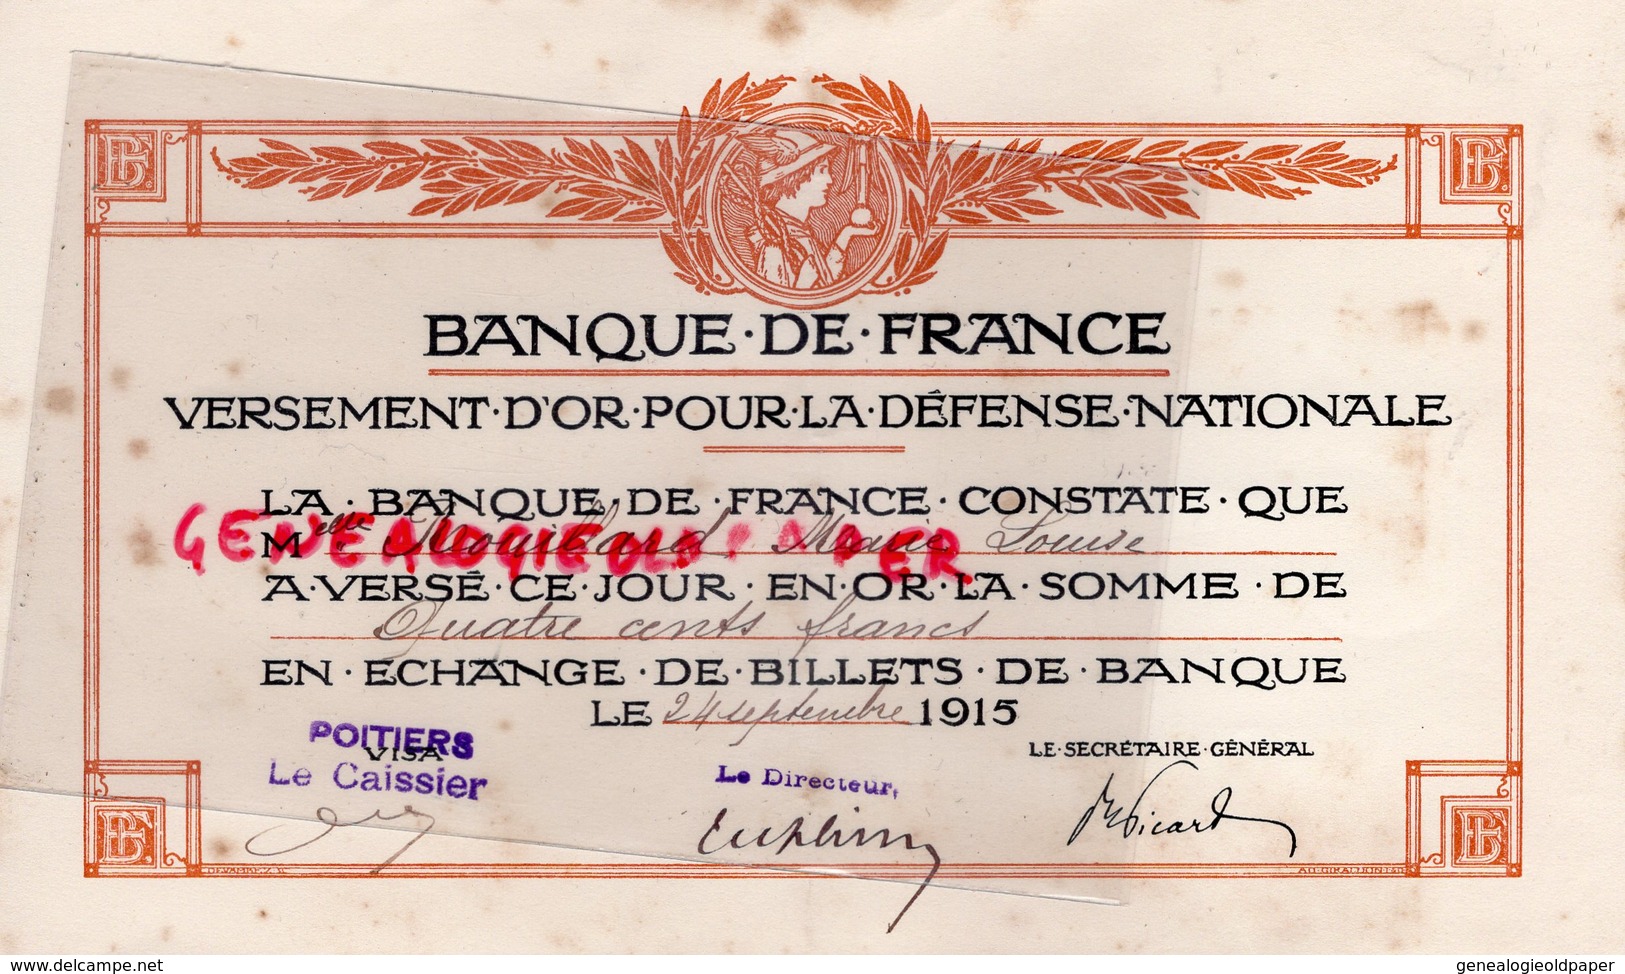 86- POITIERS-- VERSEMENT OR DEFENSE NATIONALE -BANQUE DE FRANCE- 400 CENTS FRANCS- 1915- MARIE LOUISE ROUILLARD - Banque & Assurance